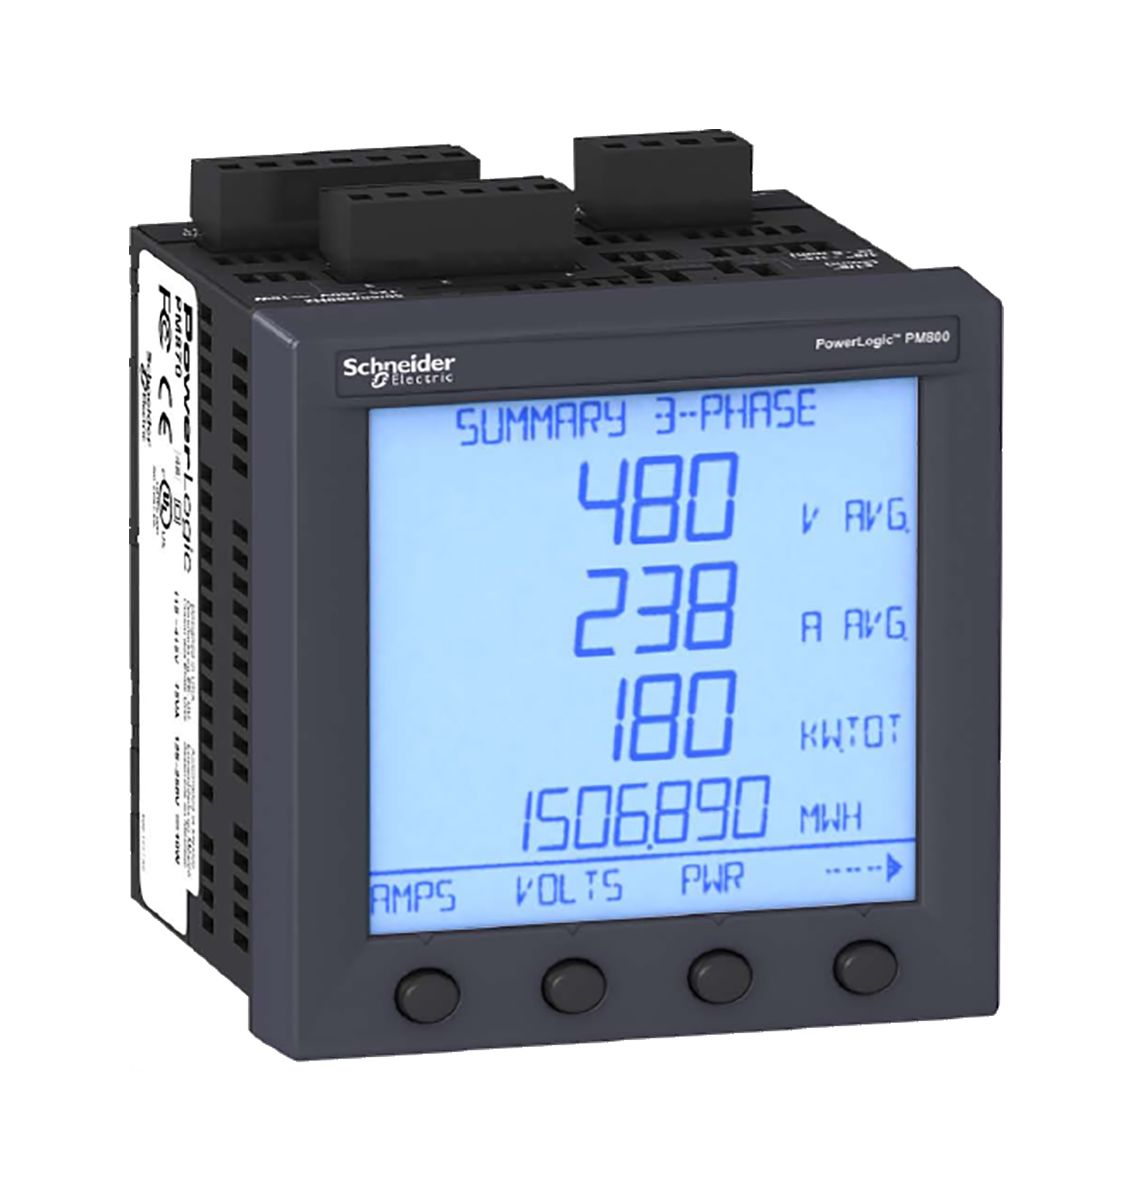 Schneider Electric PM850 Energiemessgerät LCD 92mm x 92mm, 8-stellig / 3-phasig